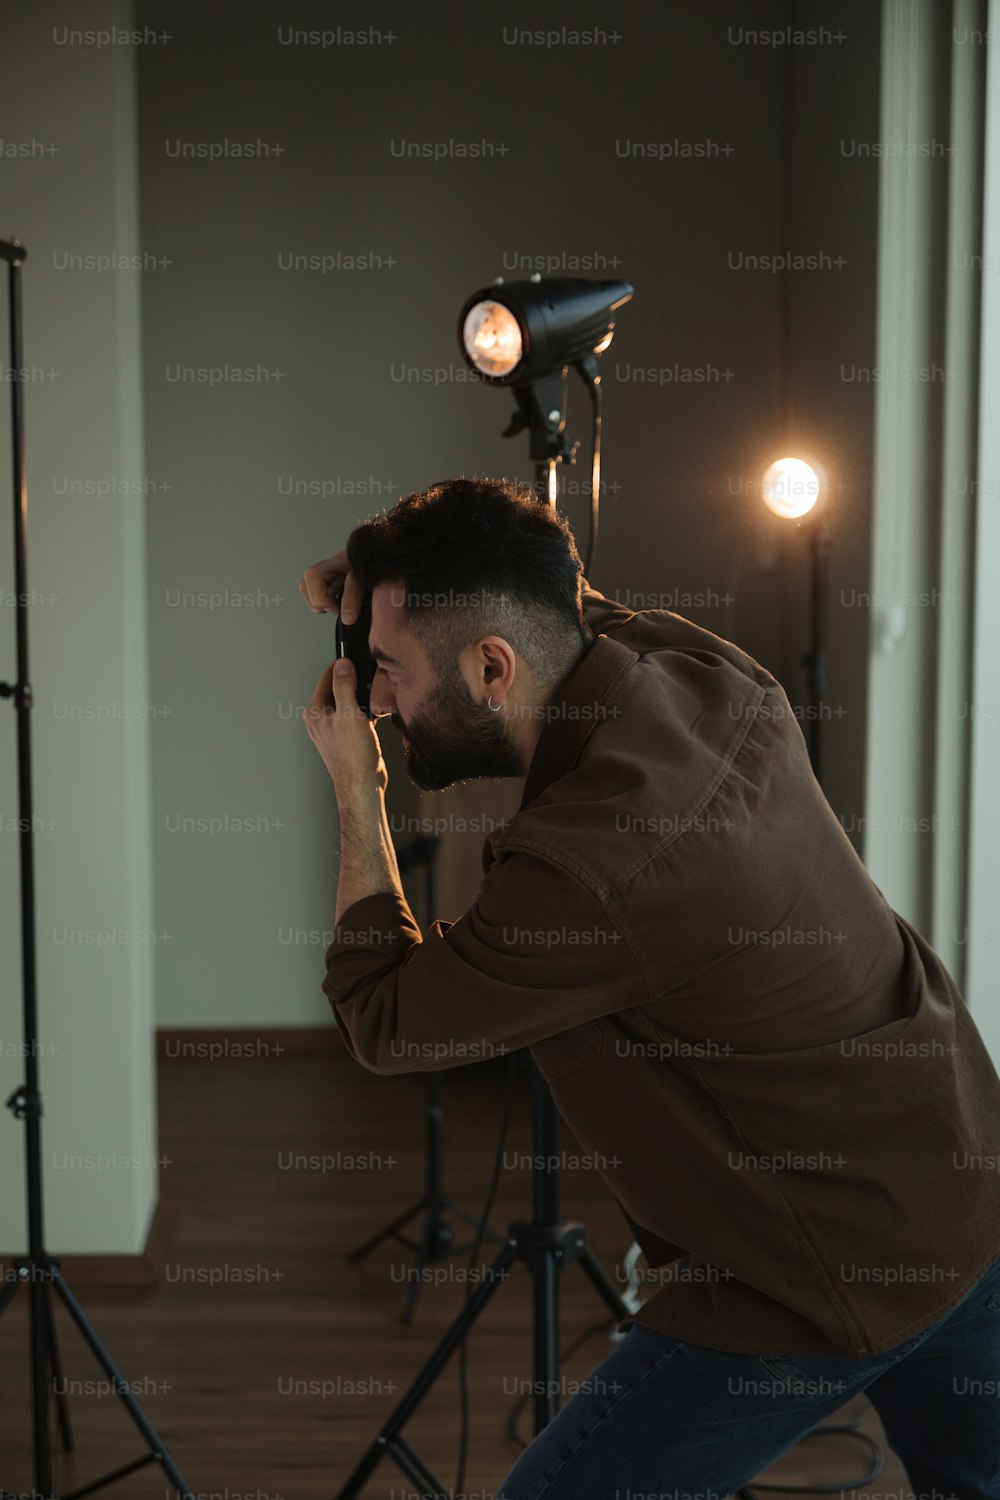 Un uomo che scatta una foto di se stesso davanti a una macchina fotografica